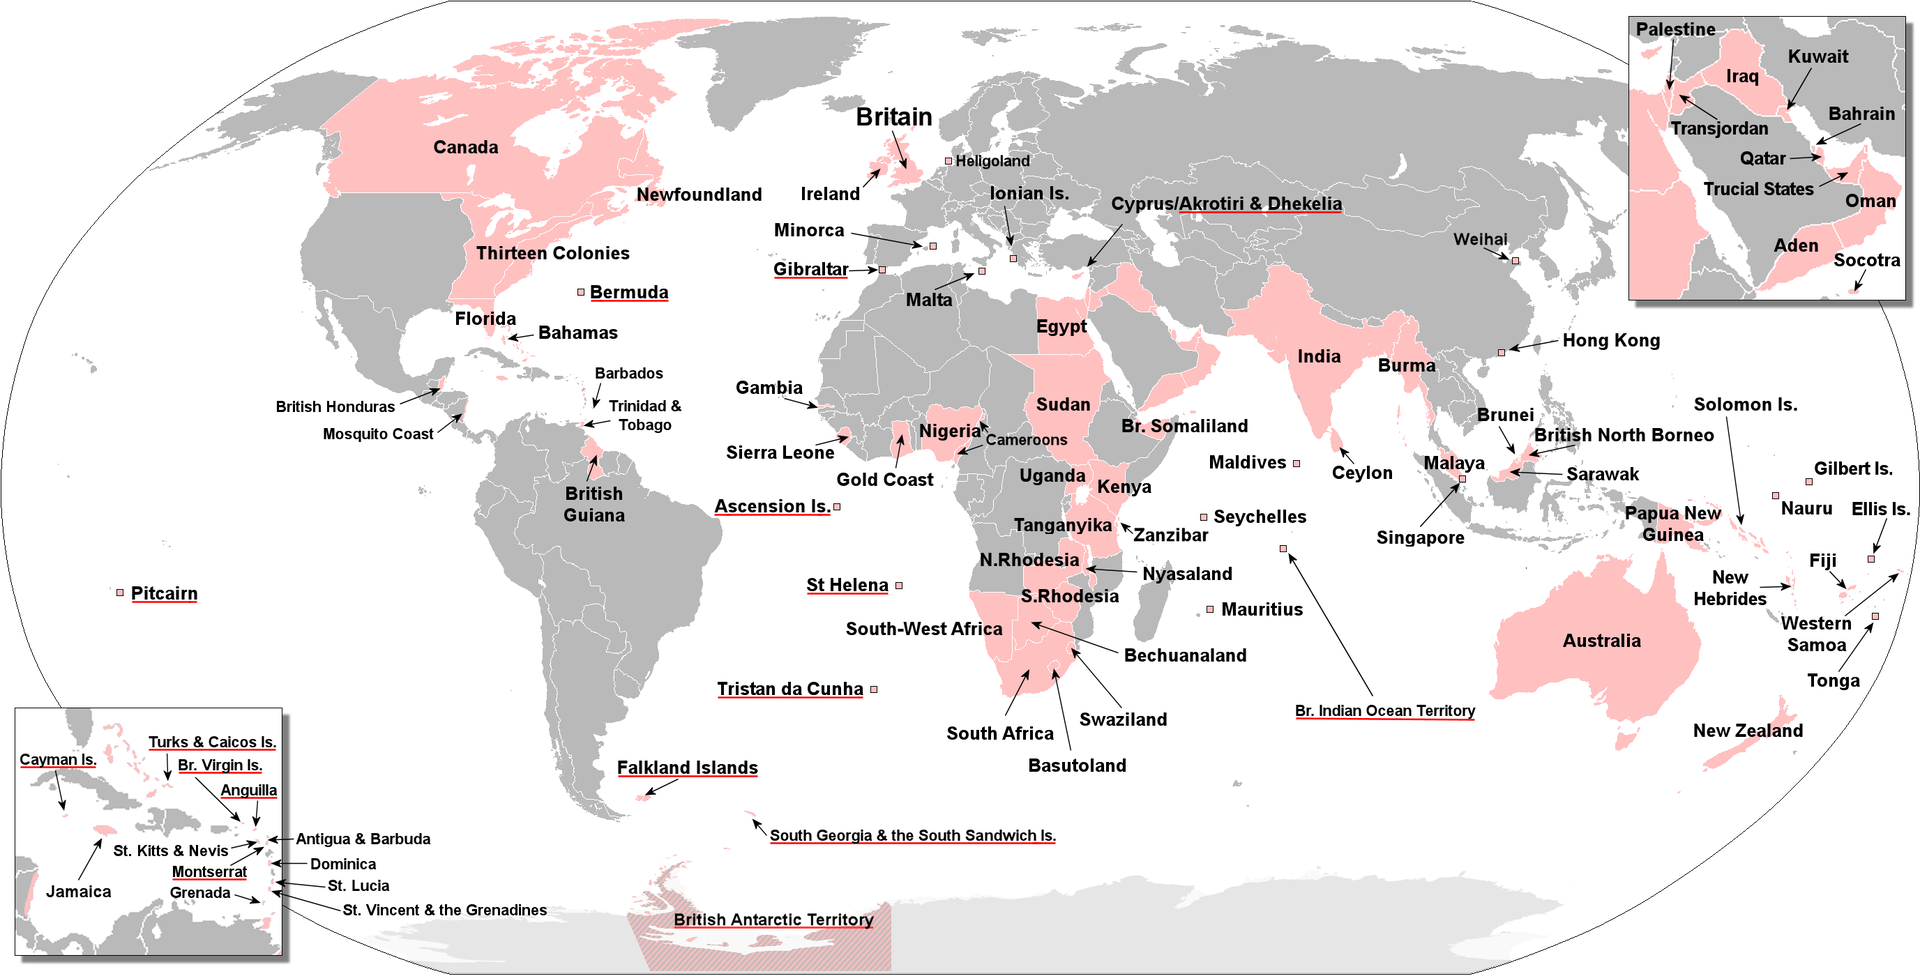 Mapa świata. Kolorem różowym są zaznaczone tereny obejmujące między innymi Amerykę Północną (Kanadę i wschodnie wybrzeże obecnego USA), w Europie Wielką Brytanię, Afrykę (Egipt, Sudan, Nigeria, Sierra Leone, Złoty Przylądek, Południową Afrykę, Botswanę, Rodezję, Tanganikę, Kenię, Rodezję) oraz Azję Mniejszą (Irak, Oman, Jemen), Indie i Birmę, Cejlon, Australię, Papuę Nową Gwineę i Oceanię.